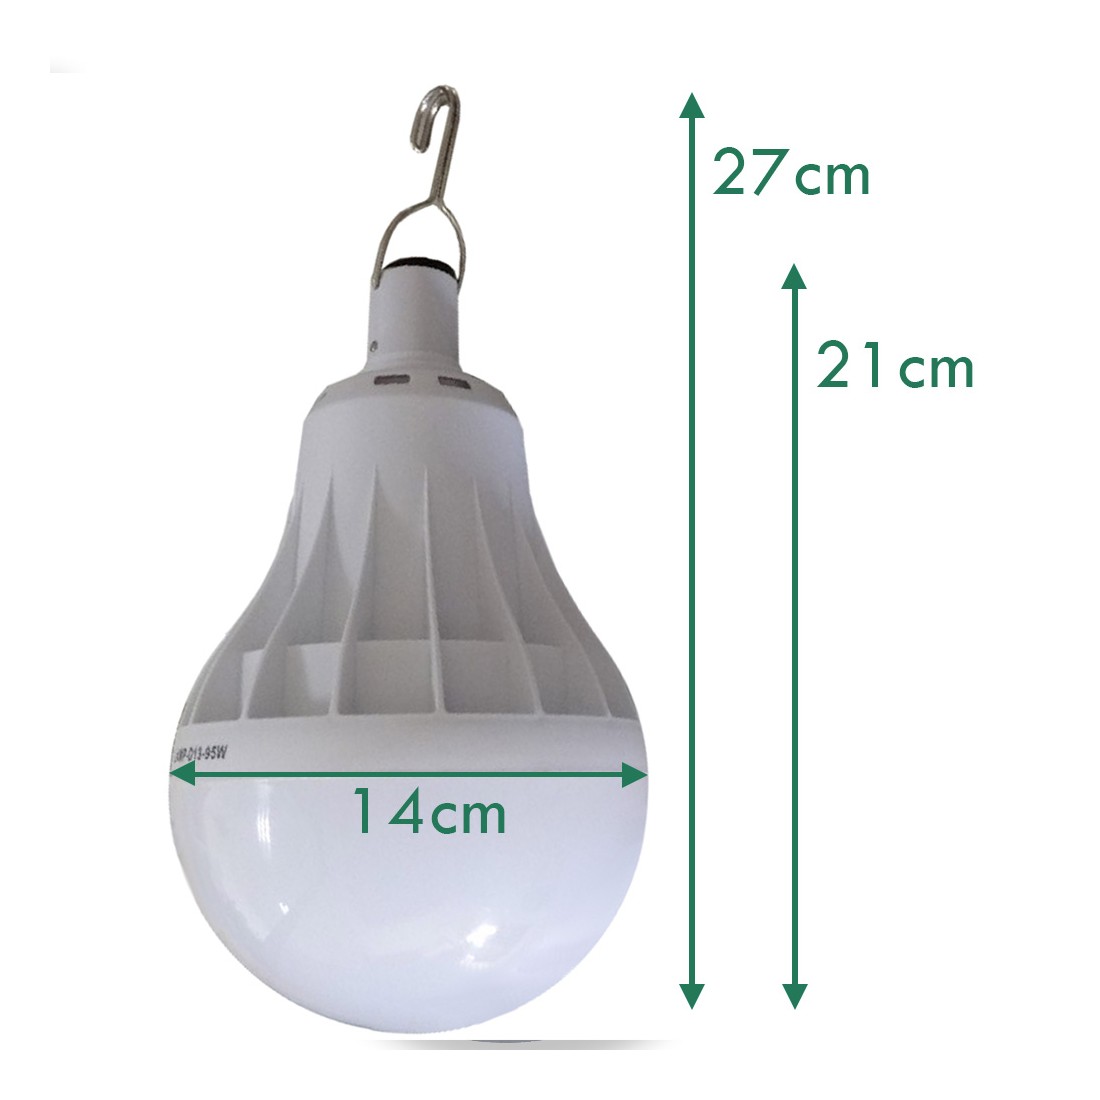 Lampe pour serre de jardin - LED rechargeable